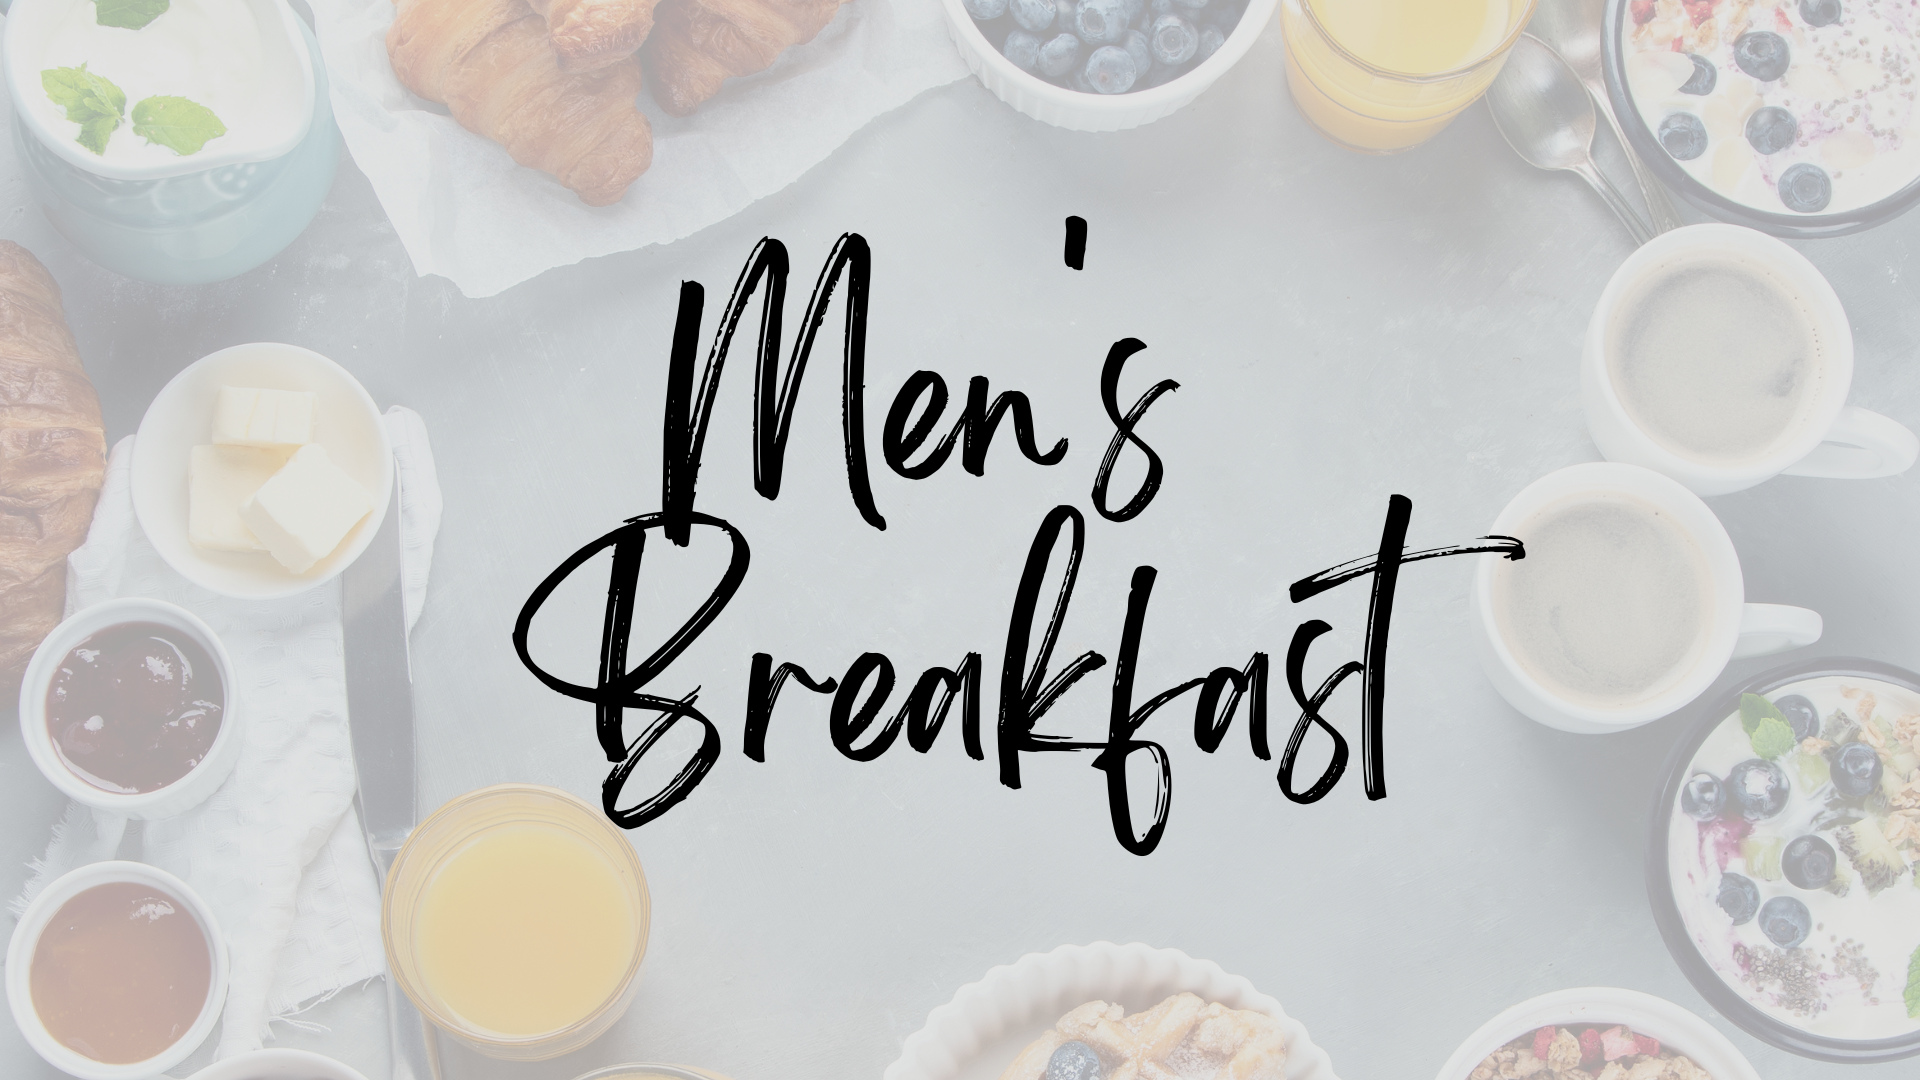 Men's Breakfast Promotional Banner